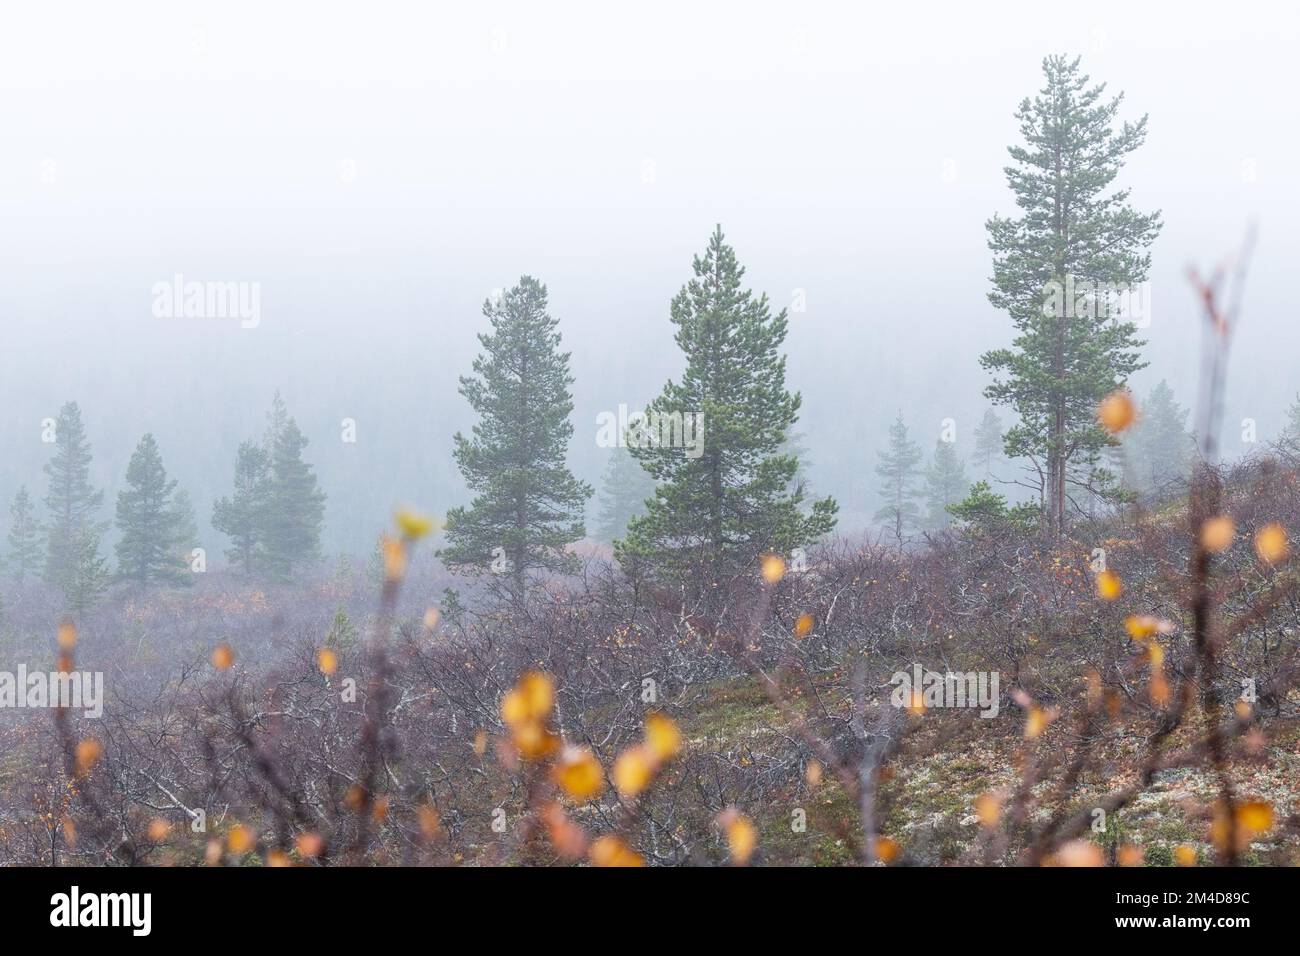 Des épinettes debout sur une Kiilopää sont tombées à flanc de colline pendant une journée d'automne brumeuse dans le parc national d'Urho Kekkonen, dans le nord de la Finlande Banque D'Images